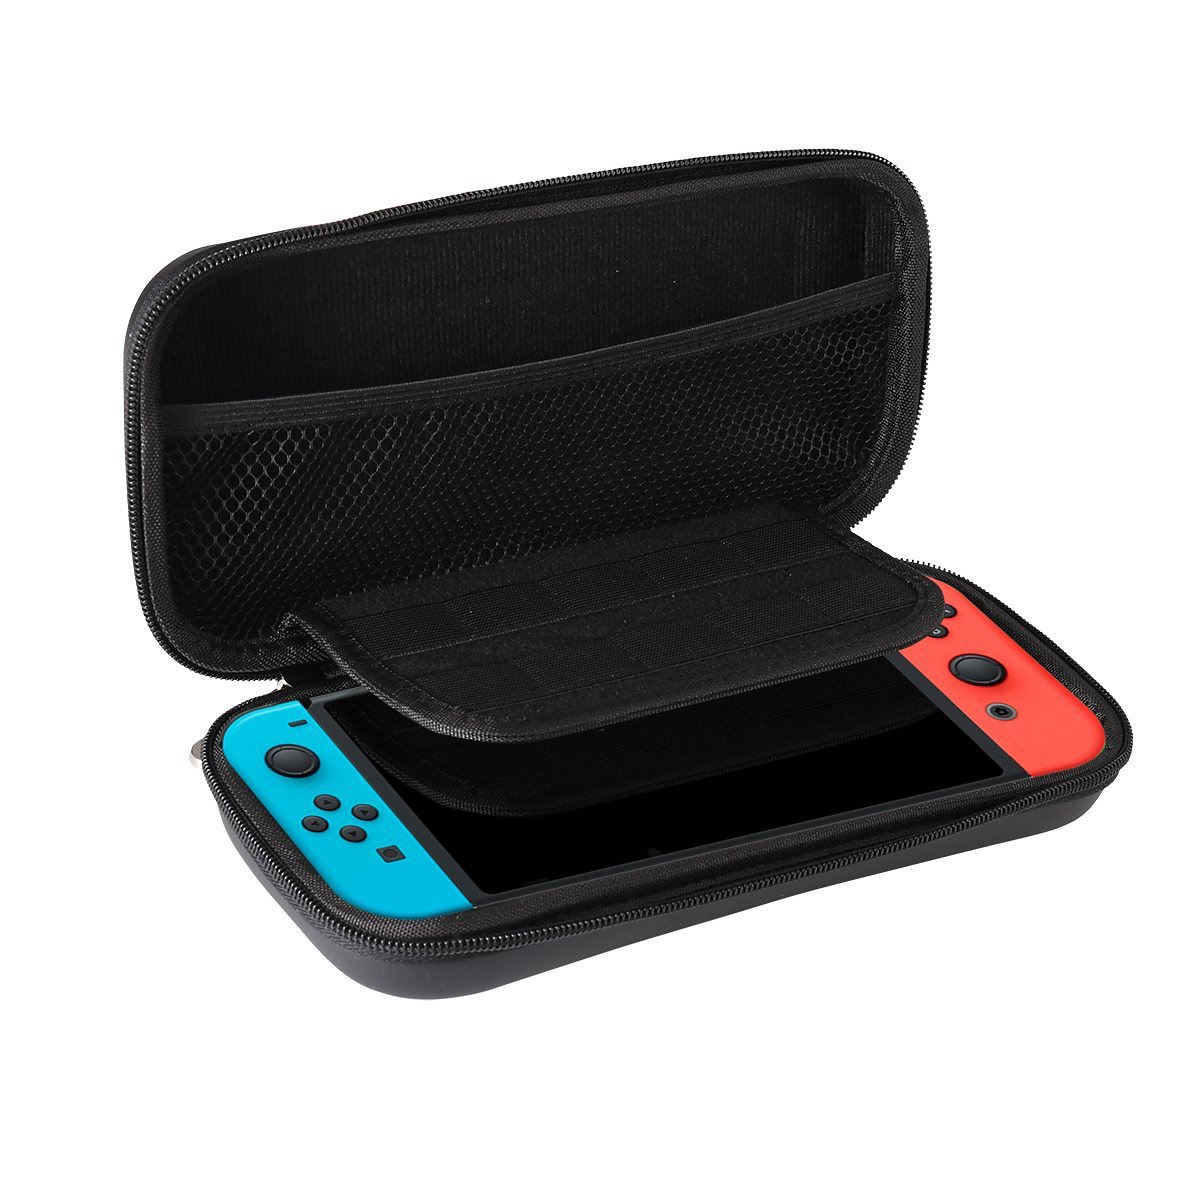 Skyddsfodral med bärrem till Nintendo Switch, svart